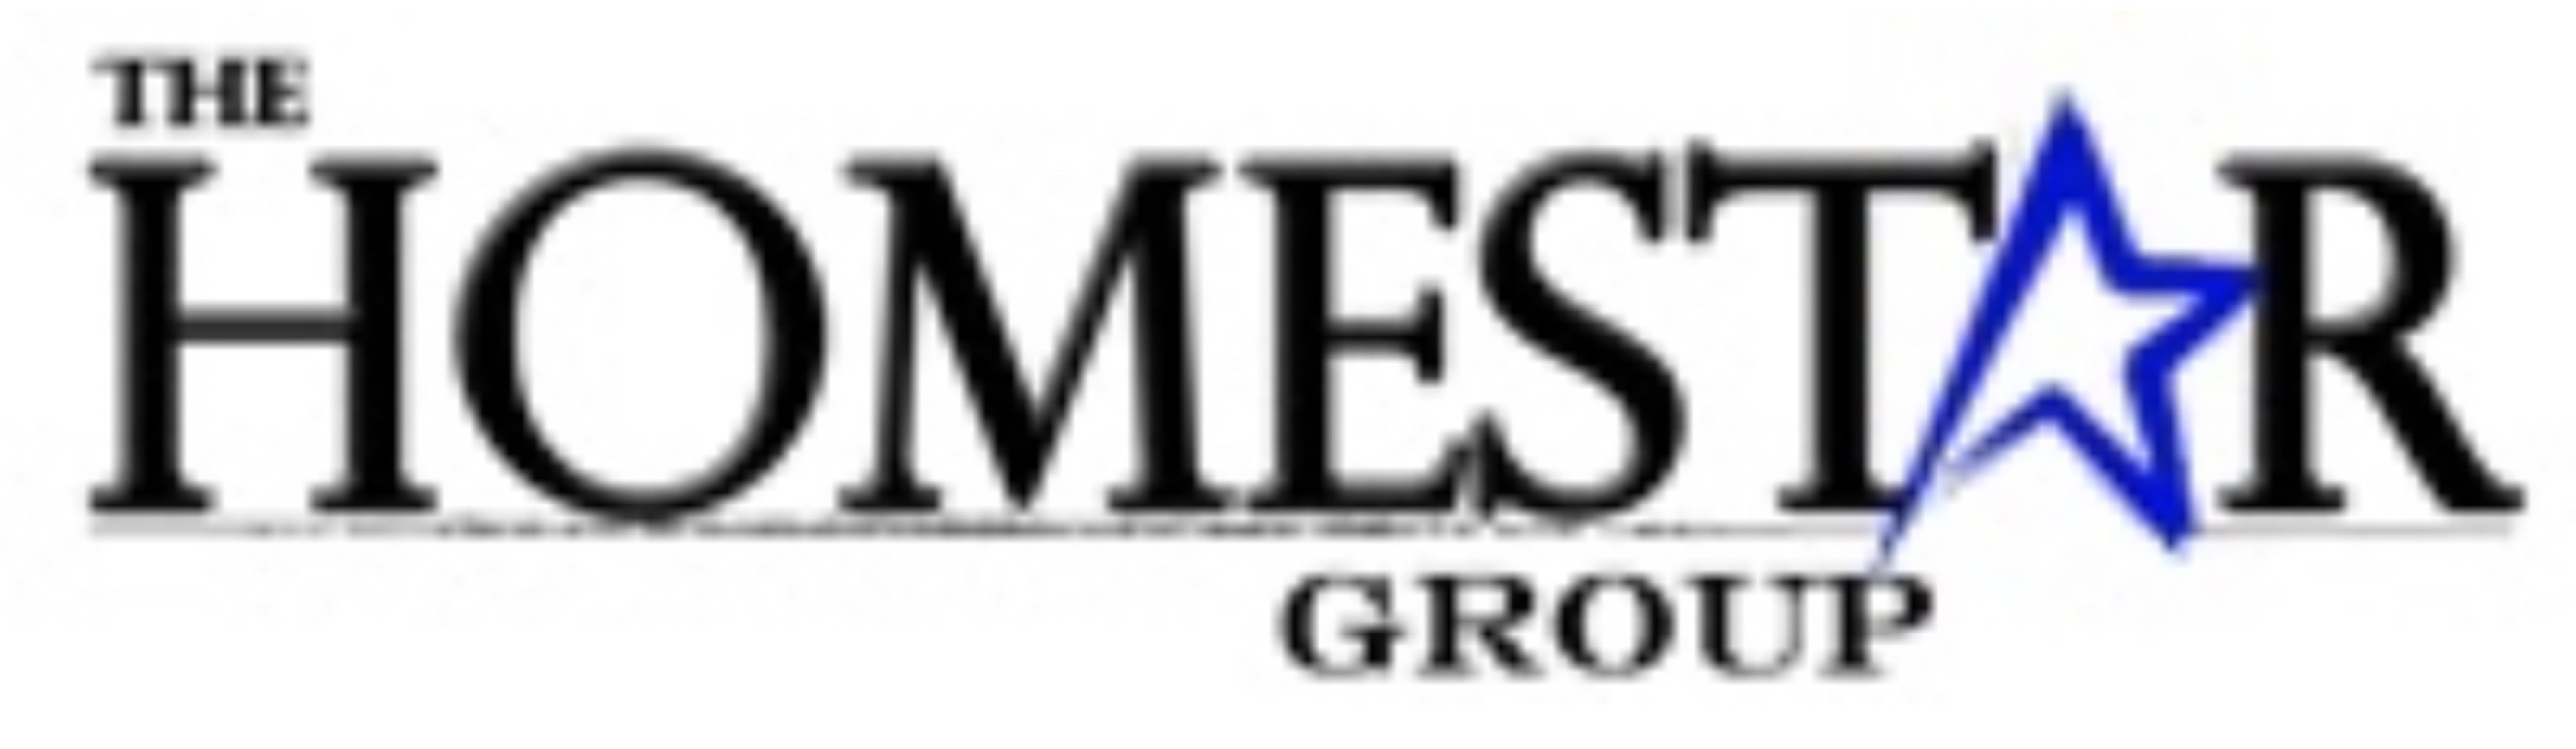 The Homestar Group Logo